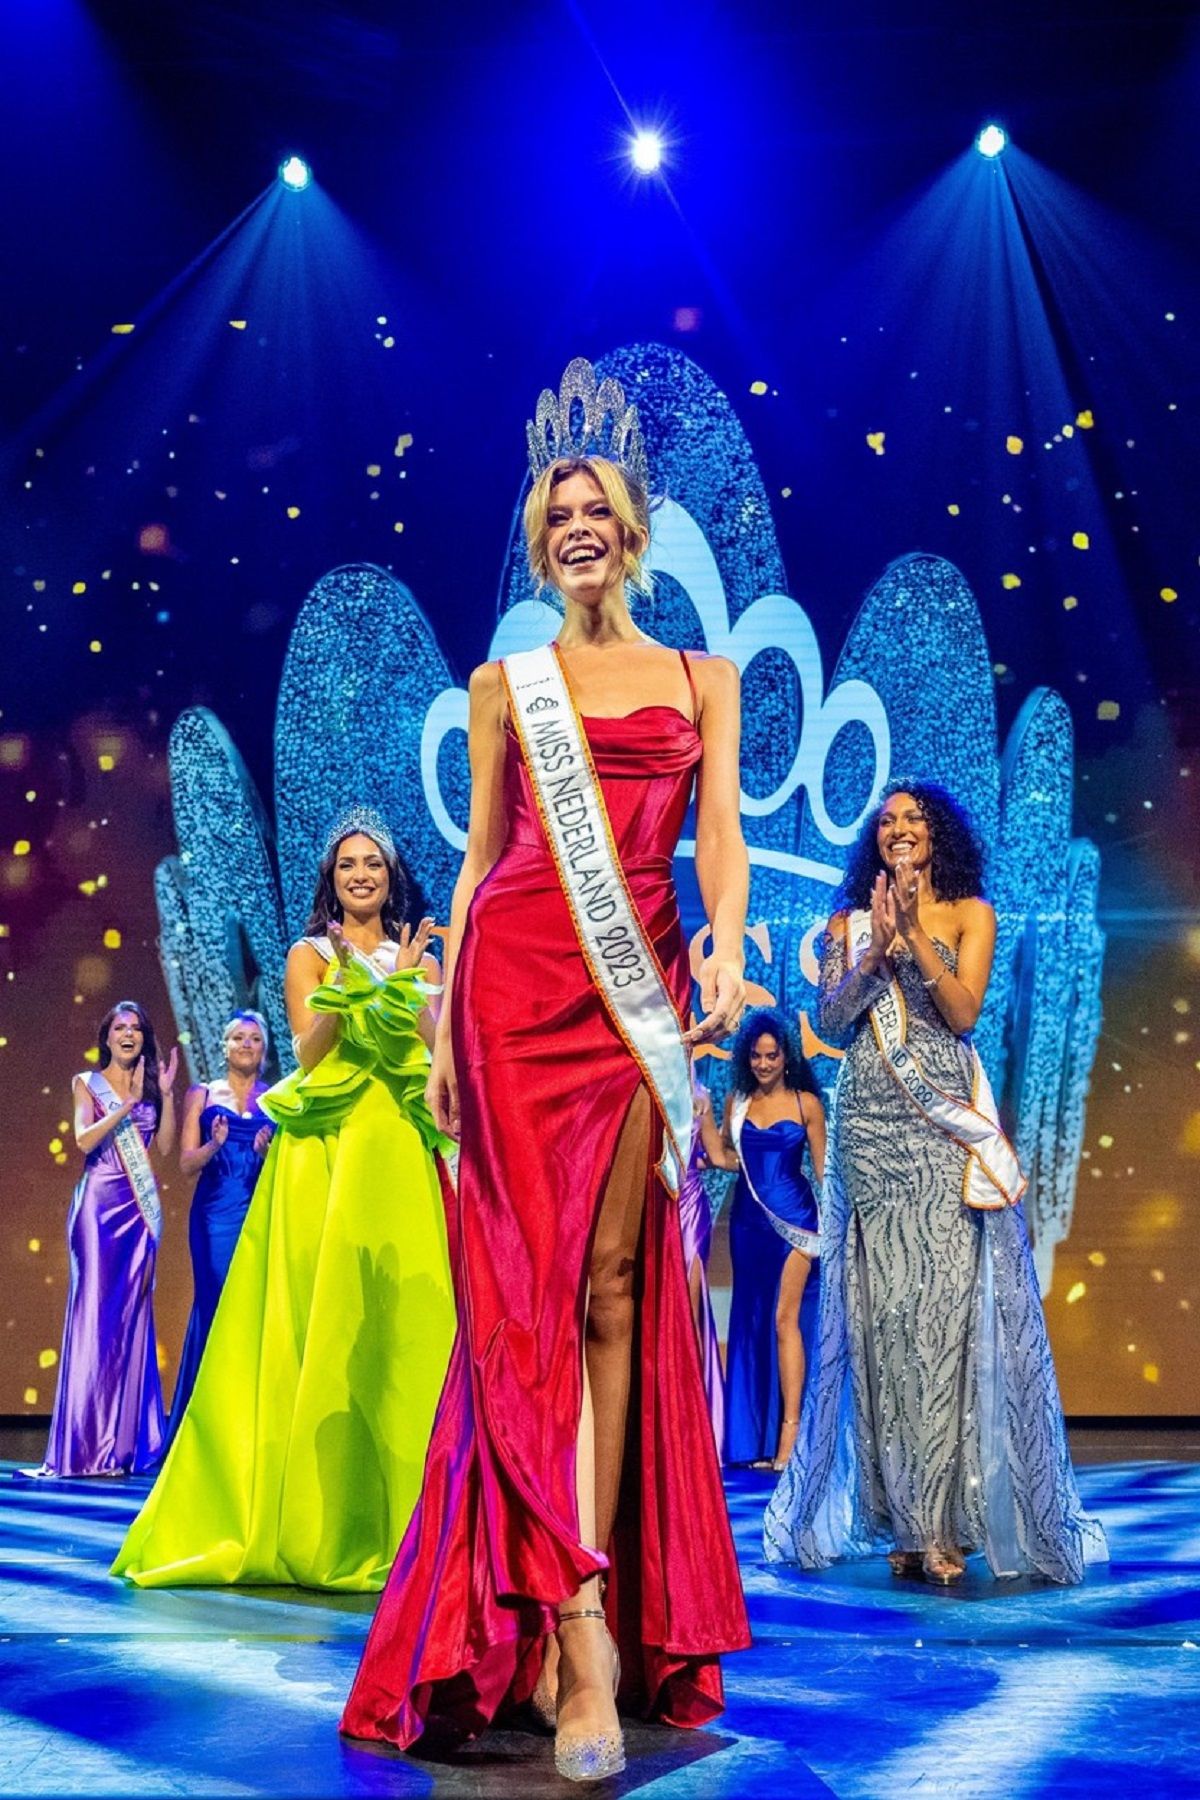 Le concours de Miss Pays-Bas a connu un moment historique lorsque Rikkie Valerie Kollé est devenue la première femme trans à remporter la couronne.